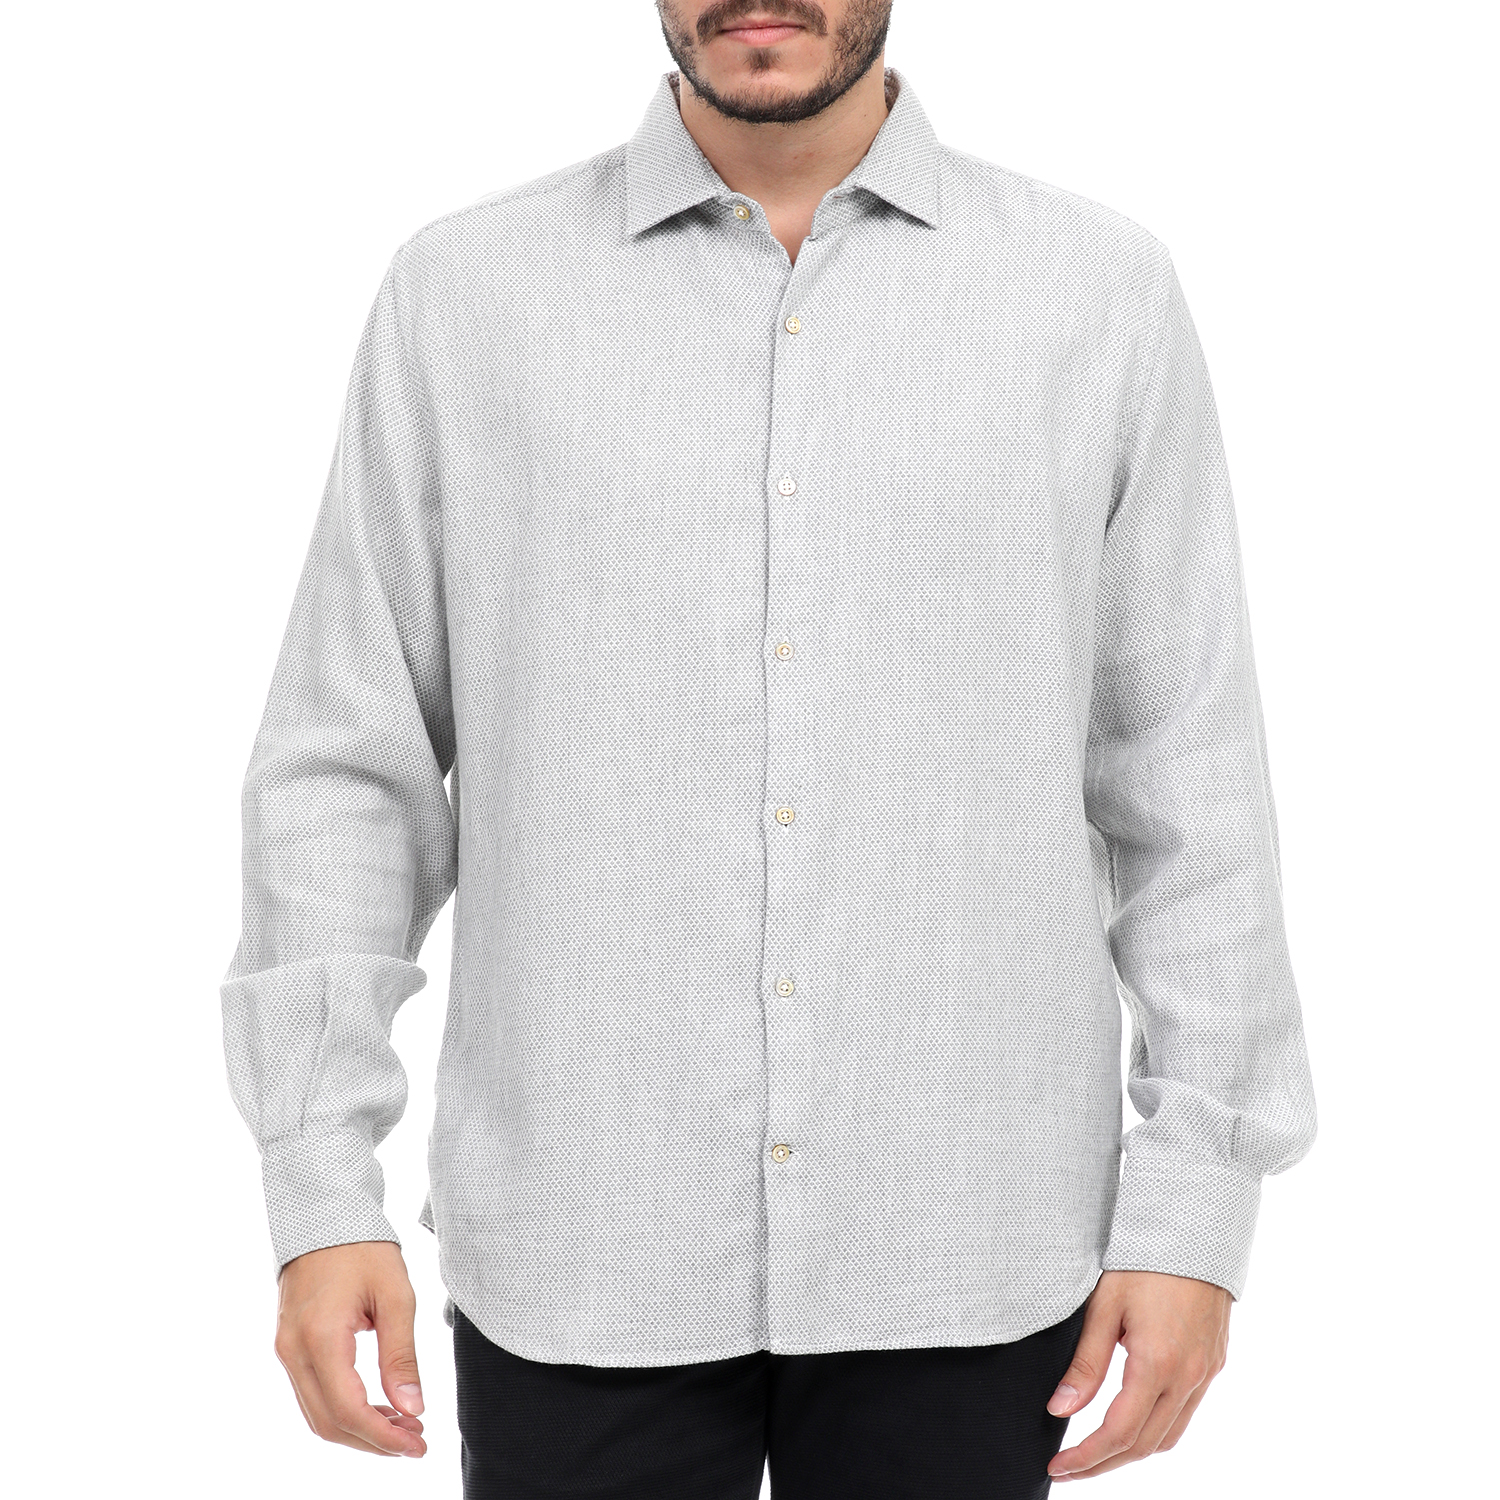 Ανδρικά/Ρούχα/Πουκάμισα/Μακρυμάνικα BROOKSFIELD - Ανδρικό πουκάμισο BROOKSFIELD λευκό γκρι